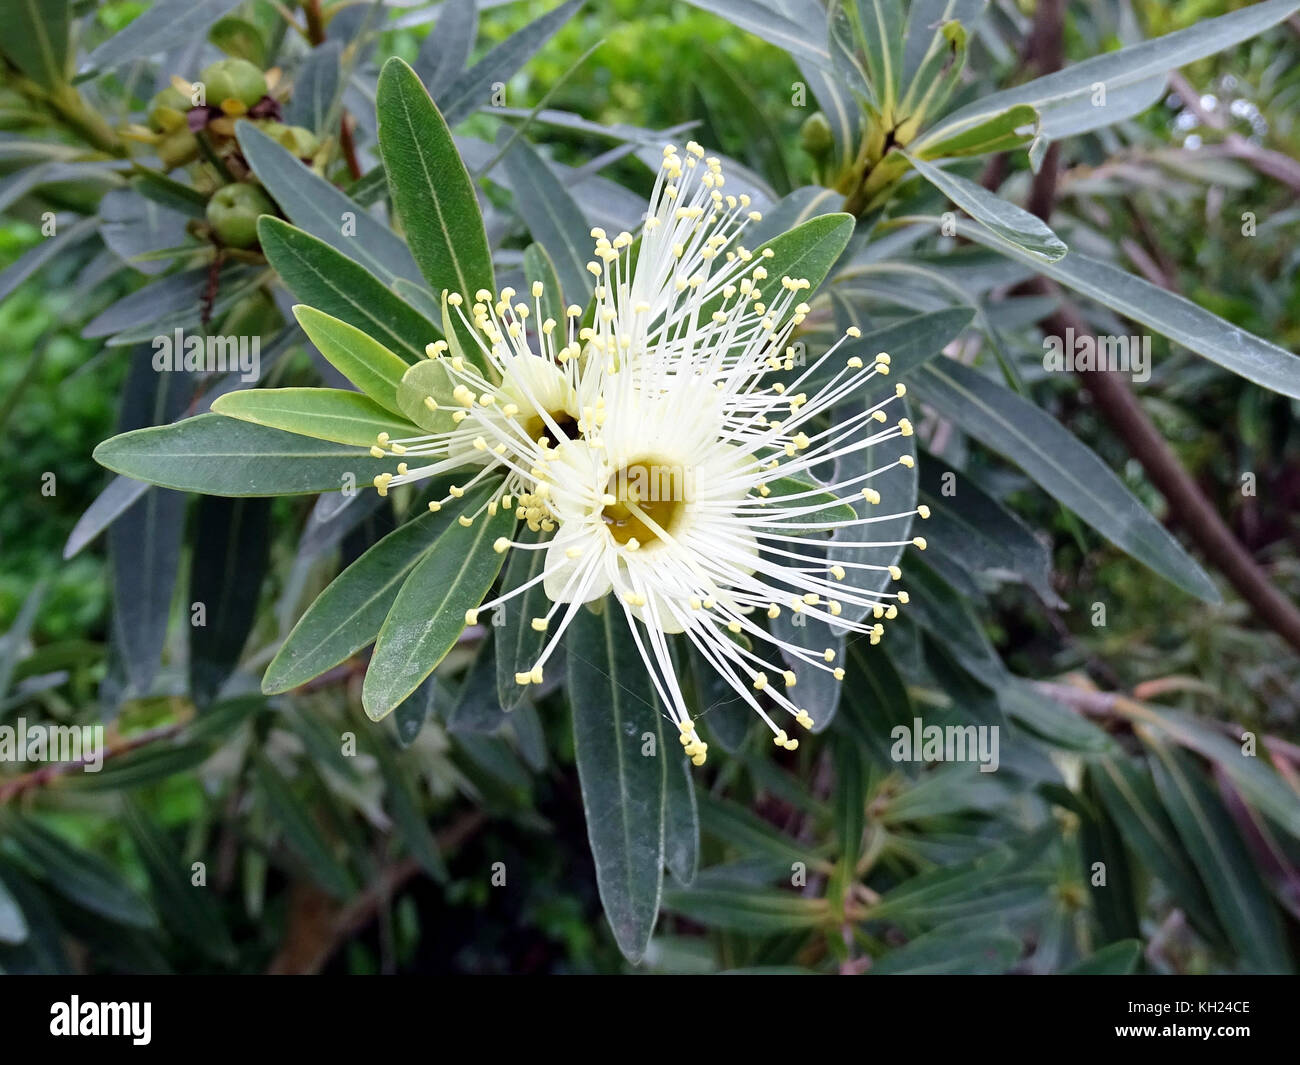 The white flower of a gum tree in full bloom in Australia Stock Photo